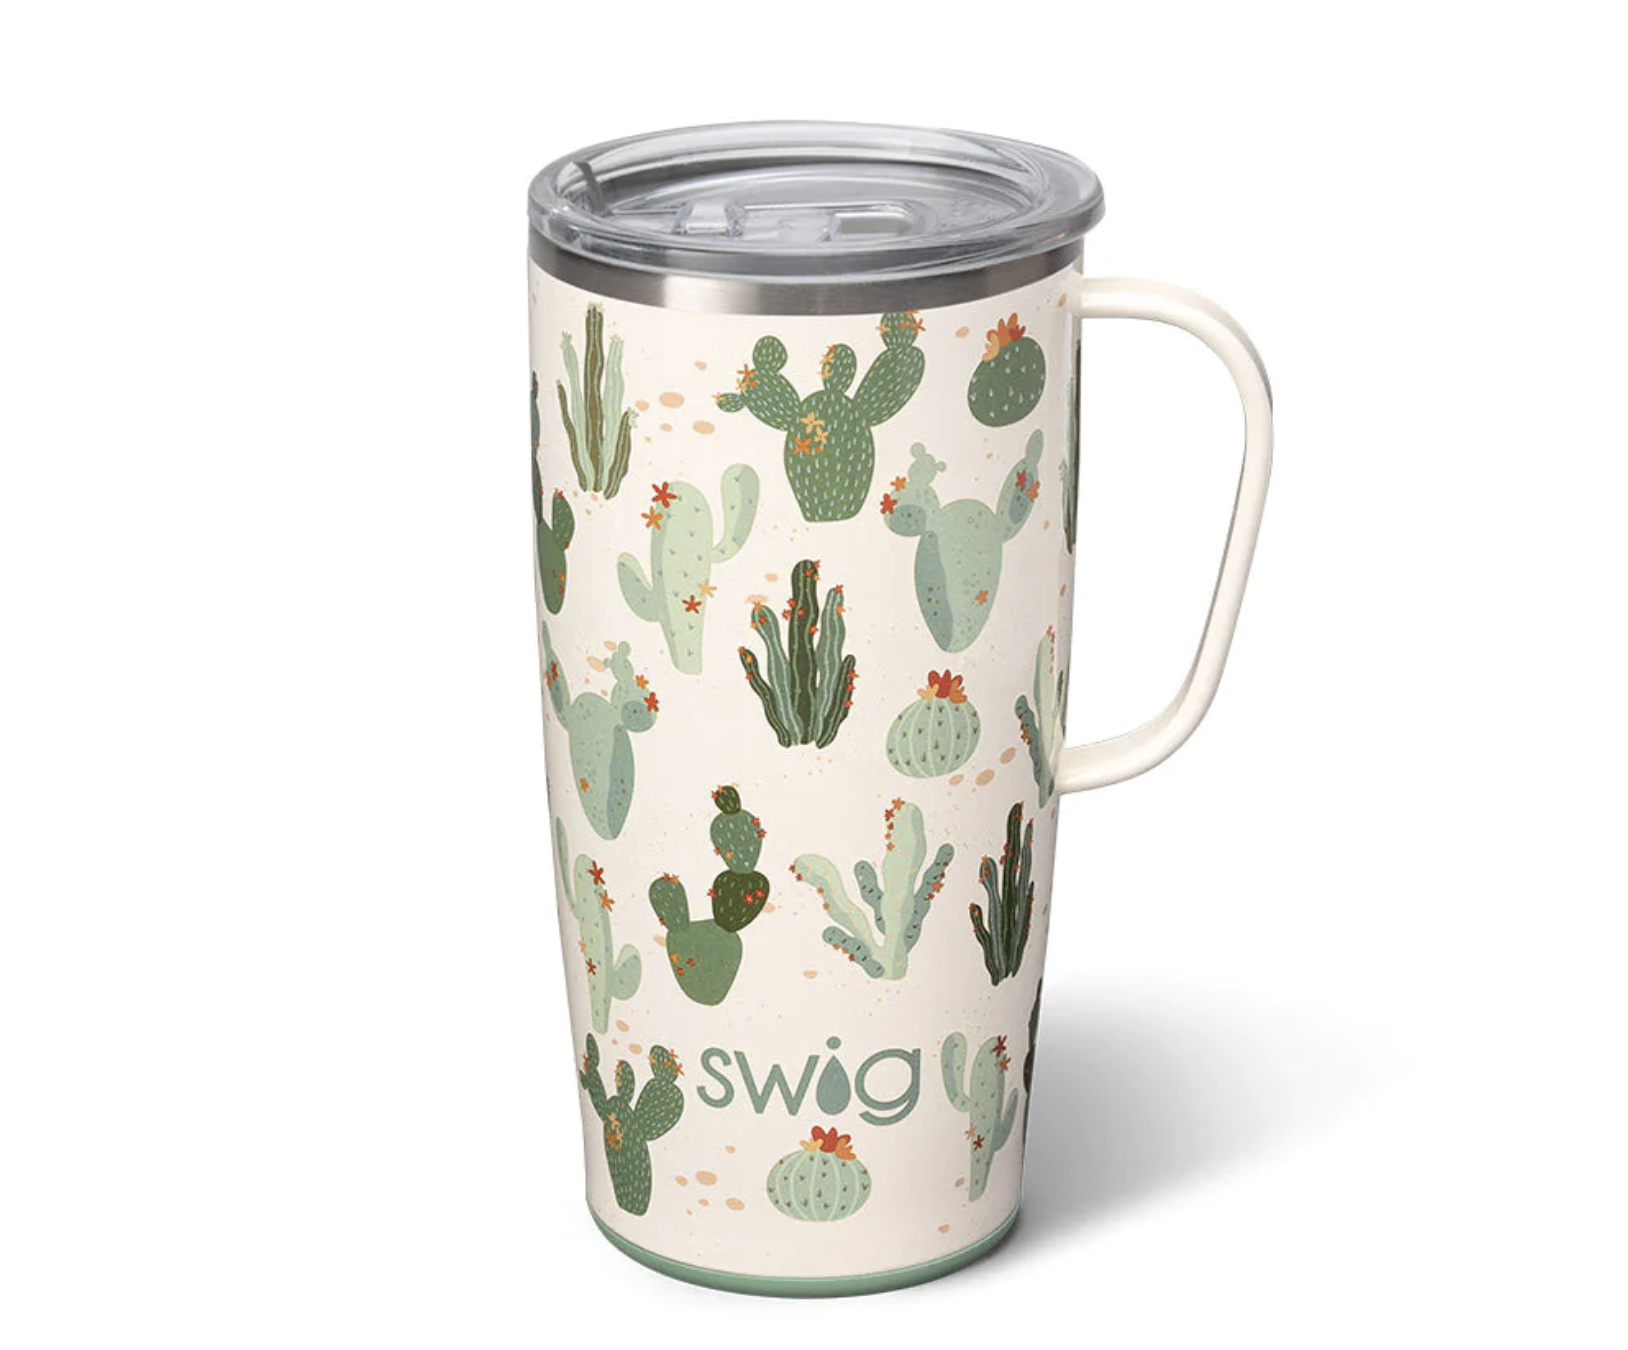 Swig 22oz Mug - Prickly Pear